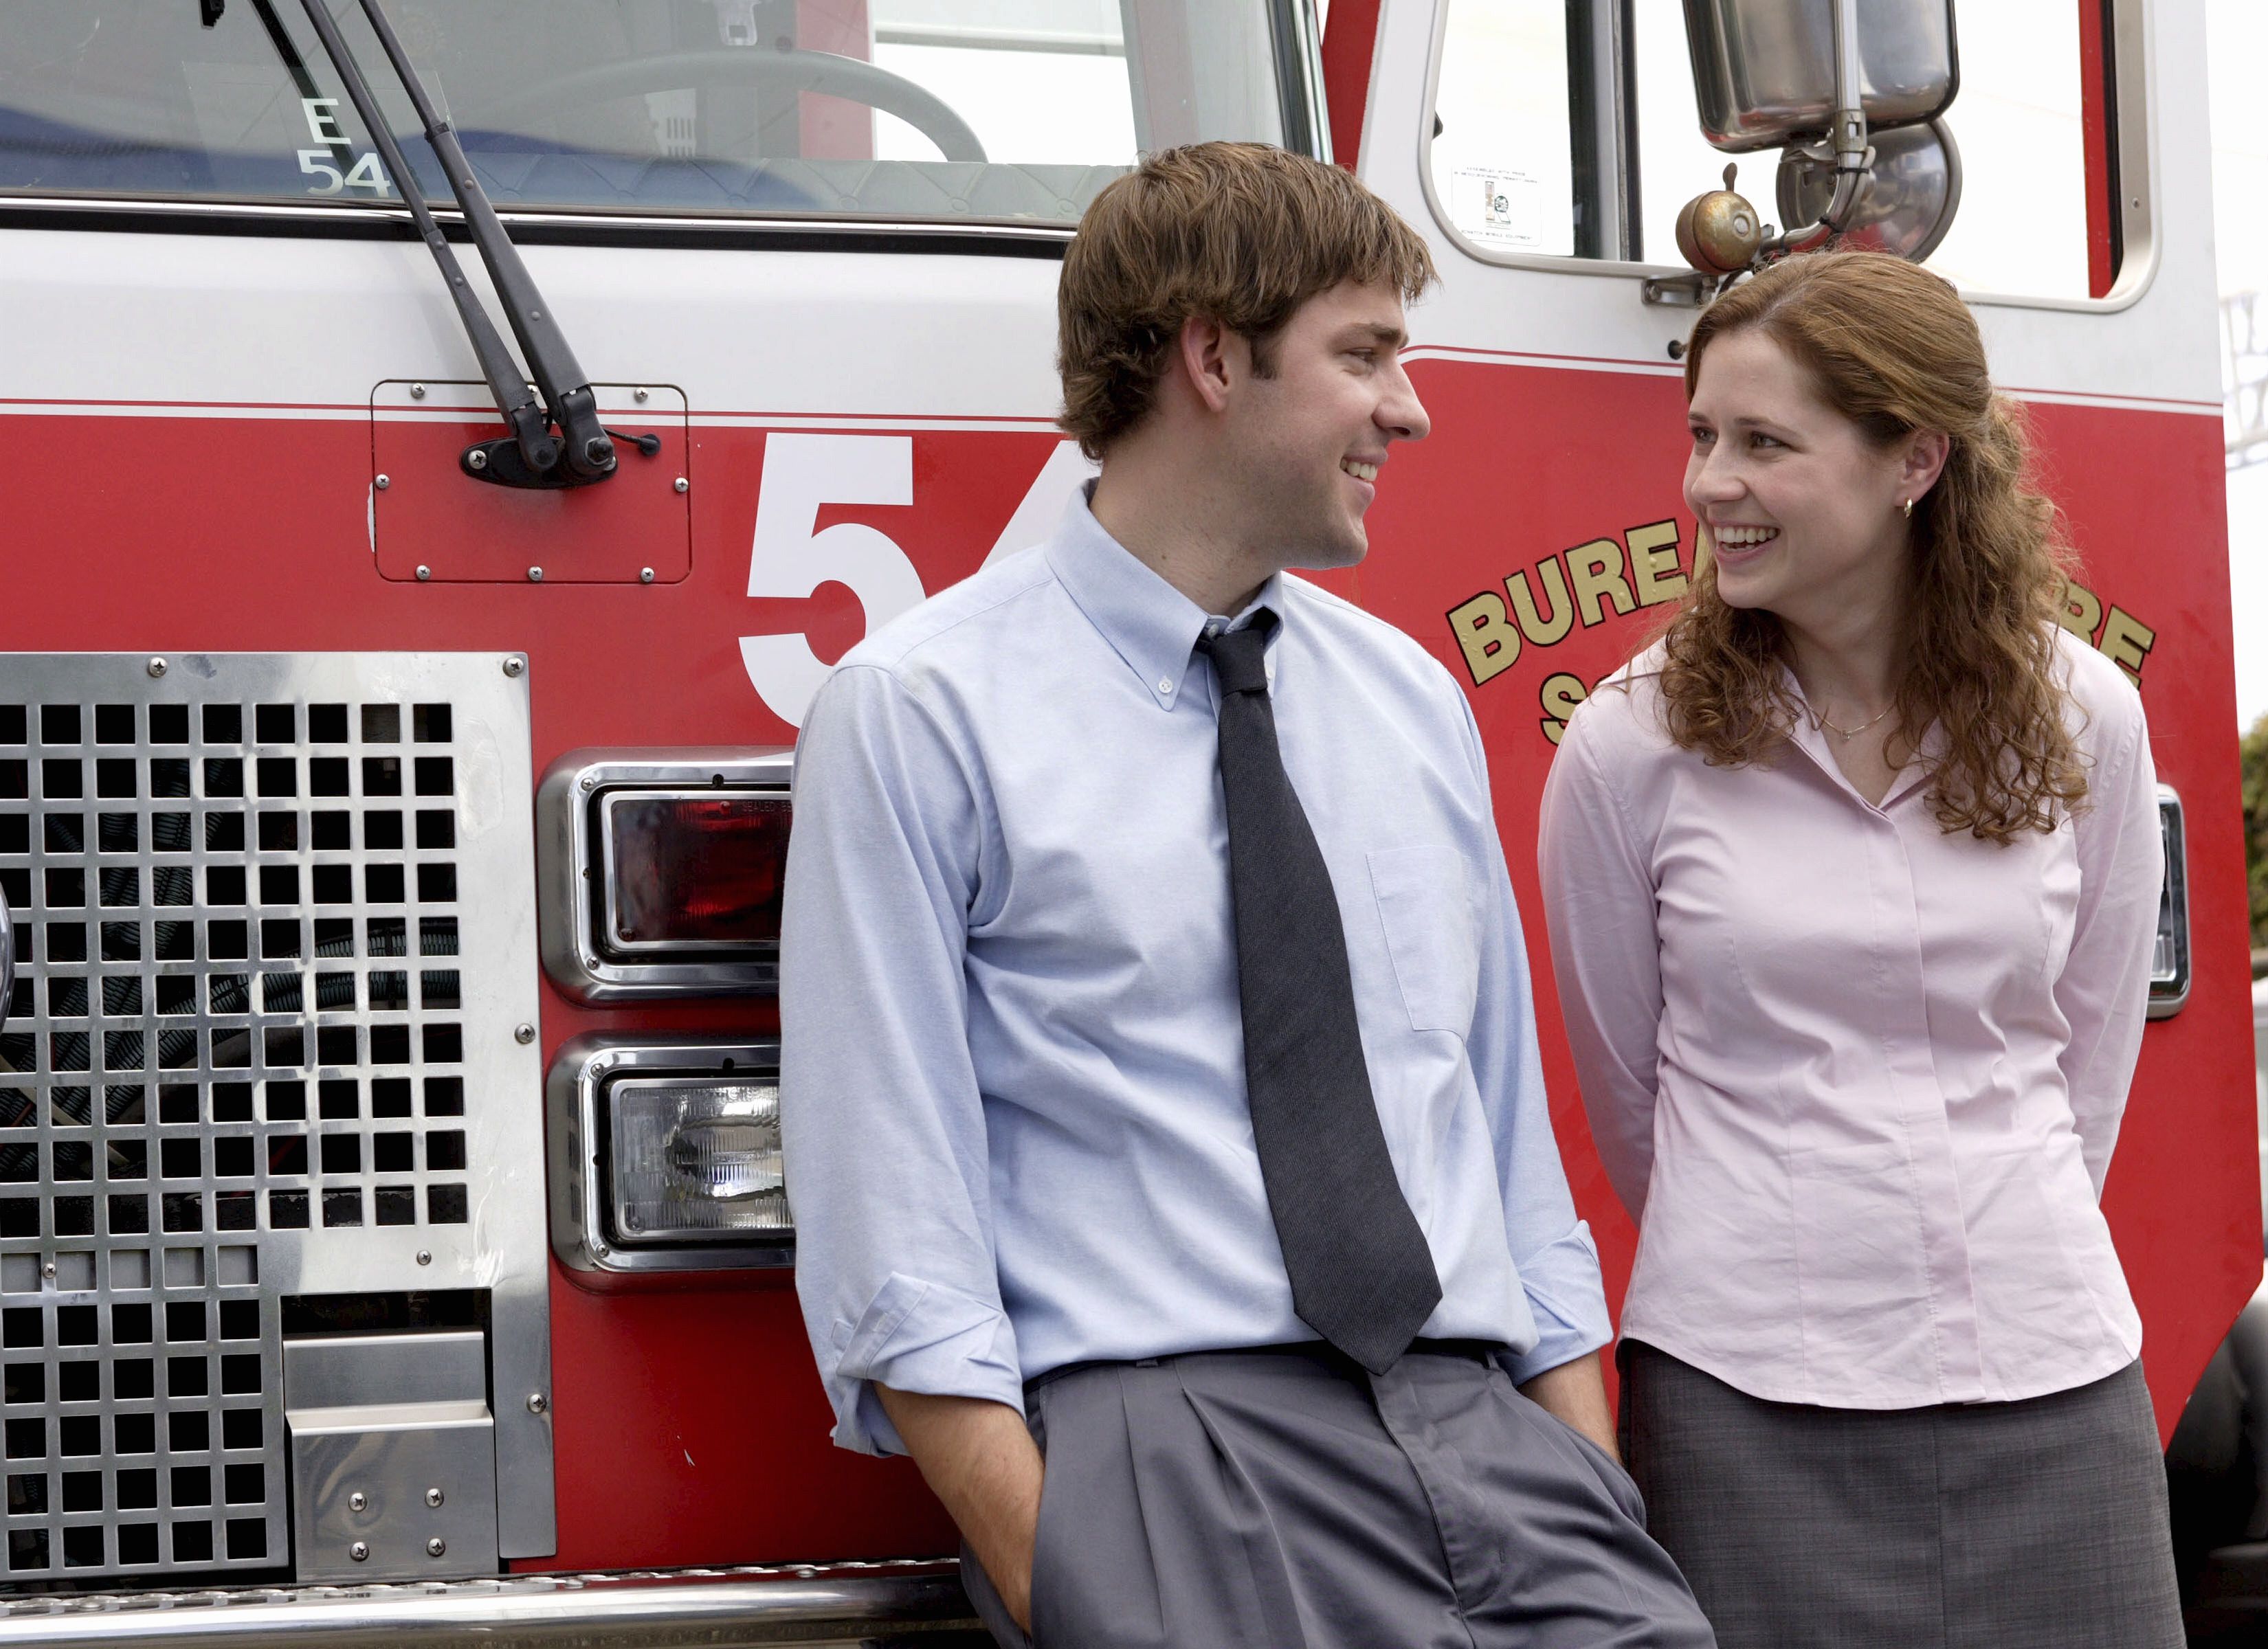 The Office': ¿Acaban juntos Pam y Jim al final de la serie?